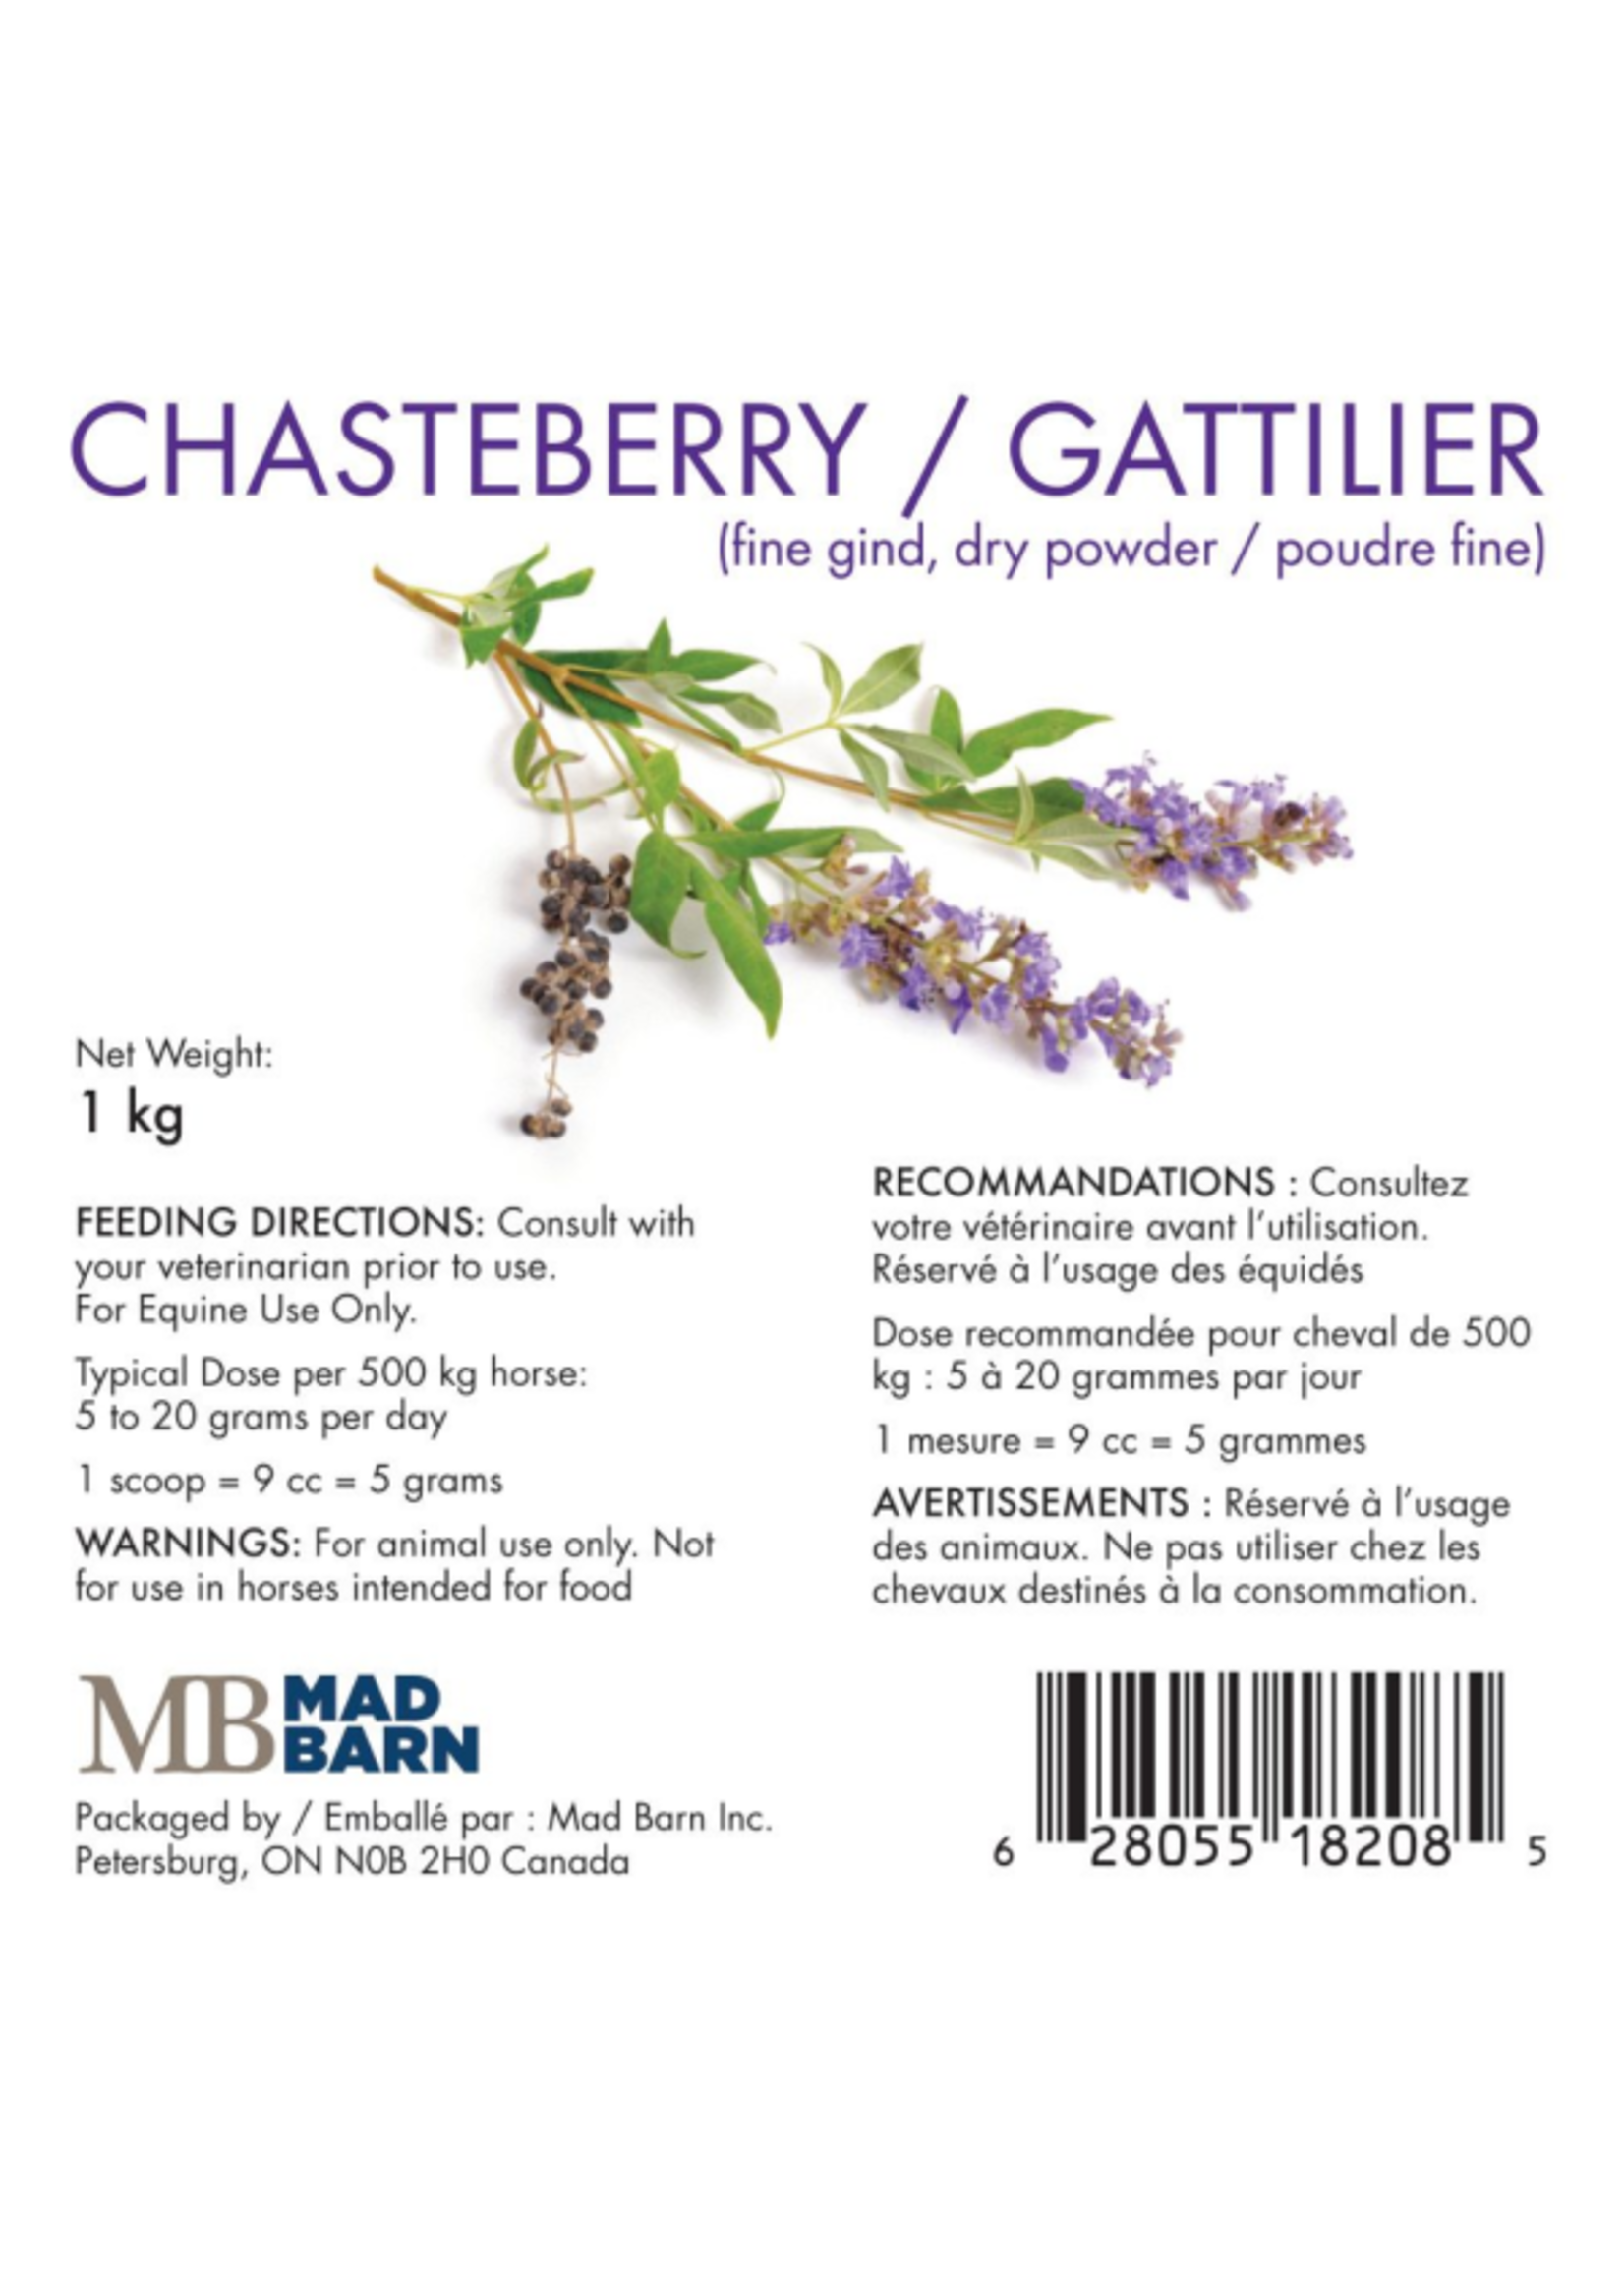 Mad Barn Mad Barn Chaseberry / Gattilier